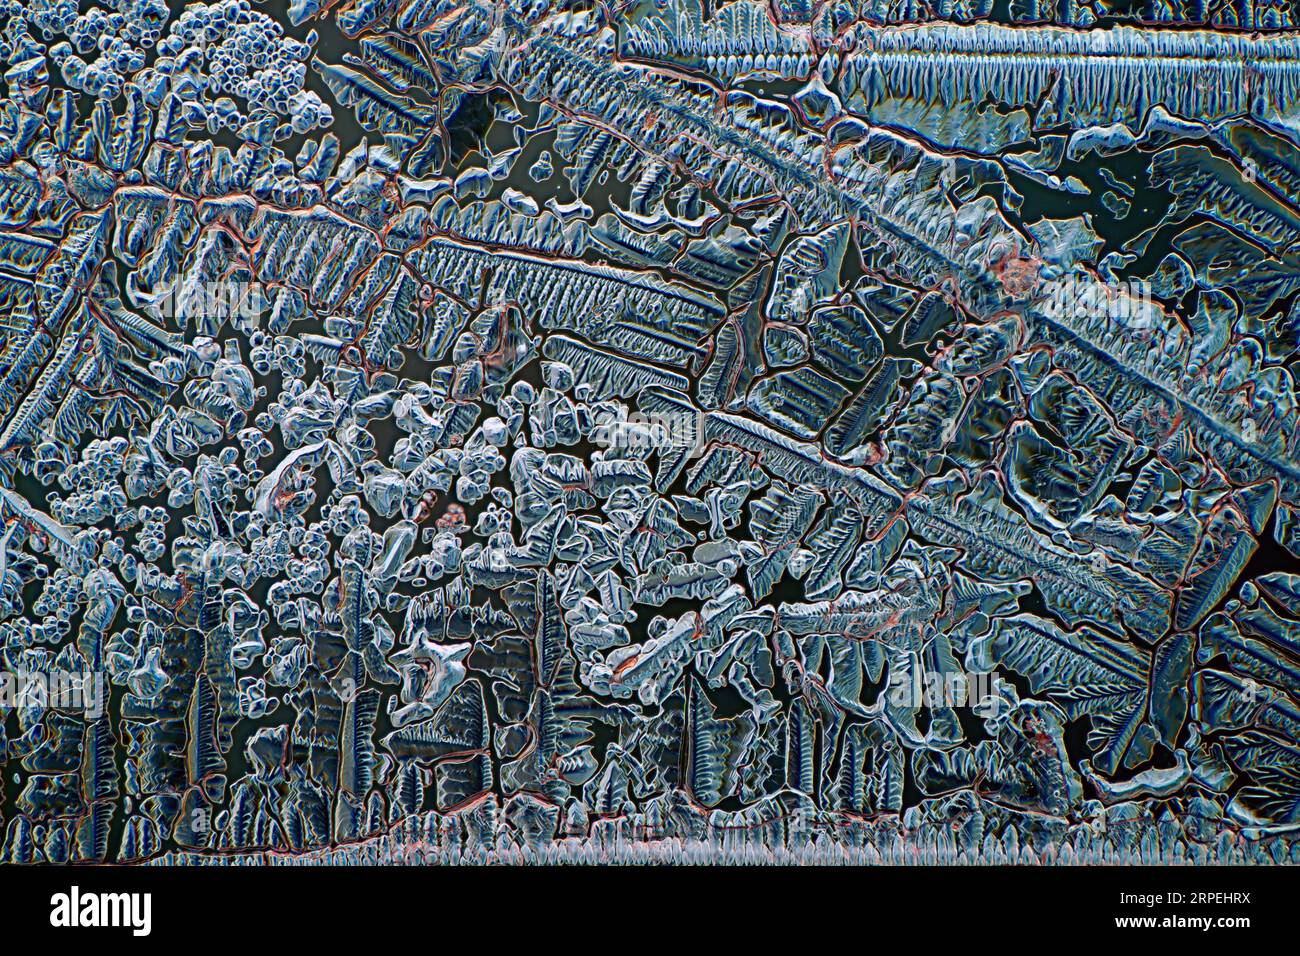 L'immagine presenta cloruro di ammonio cristallizzato fotografato attraverso il microscopio in luce polarizzata con un ingrandimento di 100X. Foto Stock